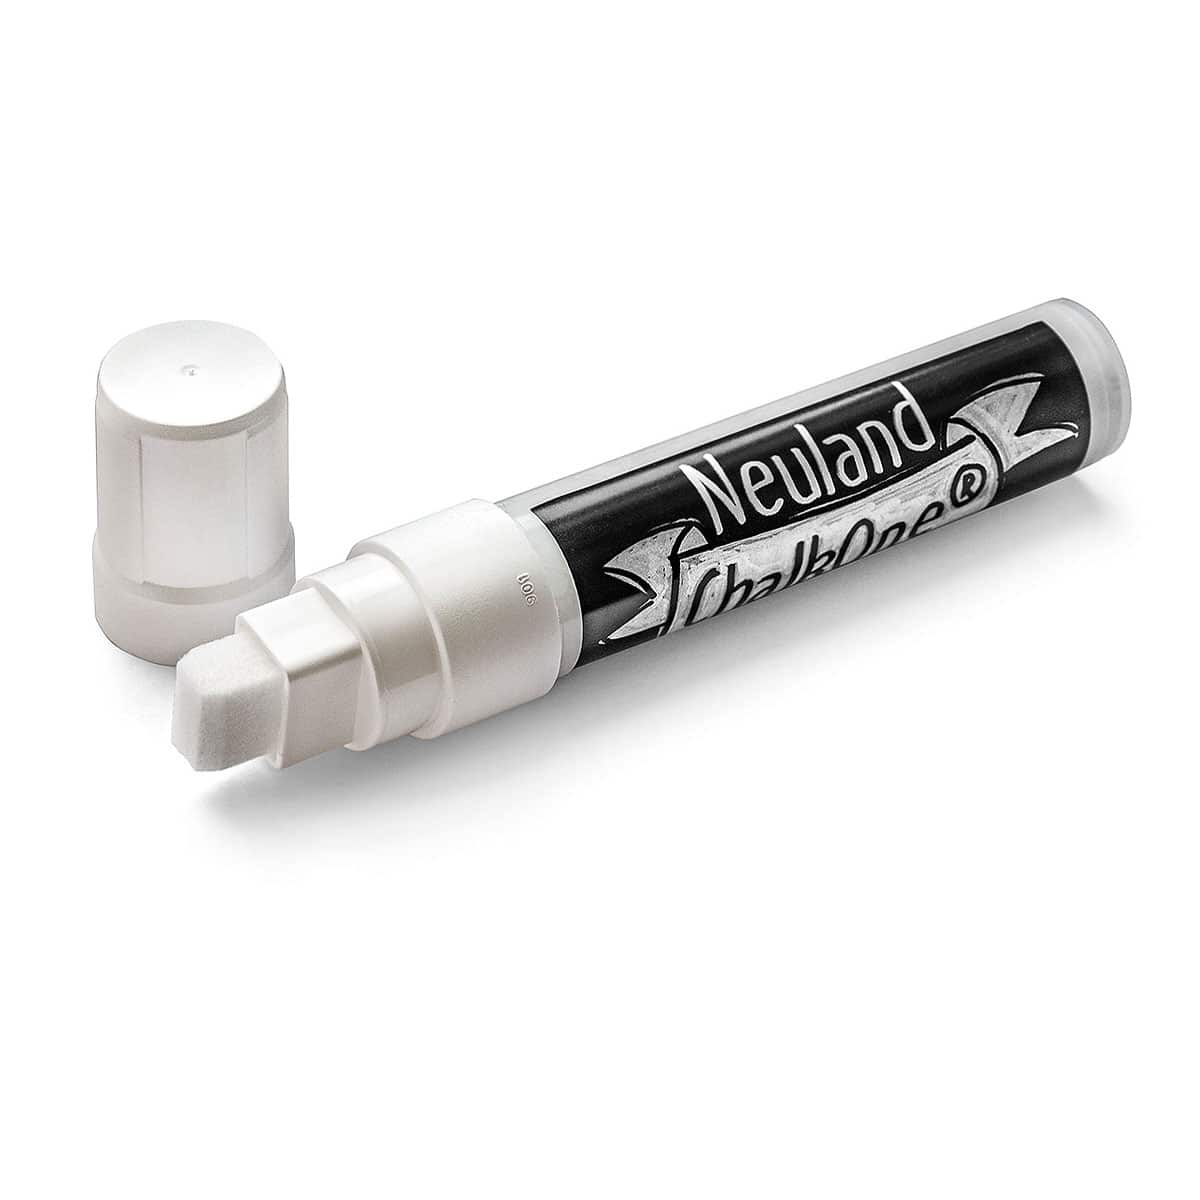 Neuland ChalkOne®, Keilspitze 5-15 mm – Einzelfarben- c501 weiß